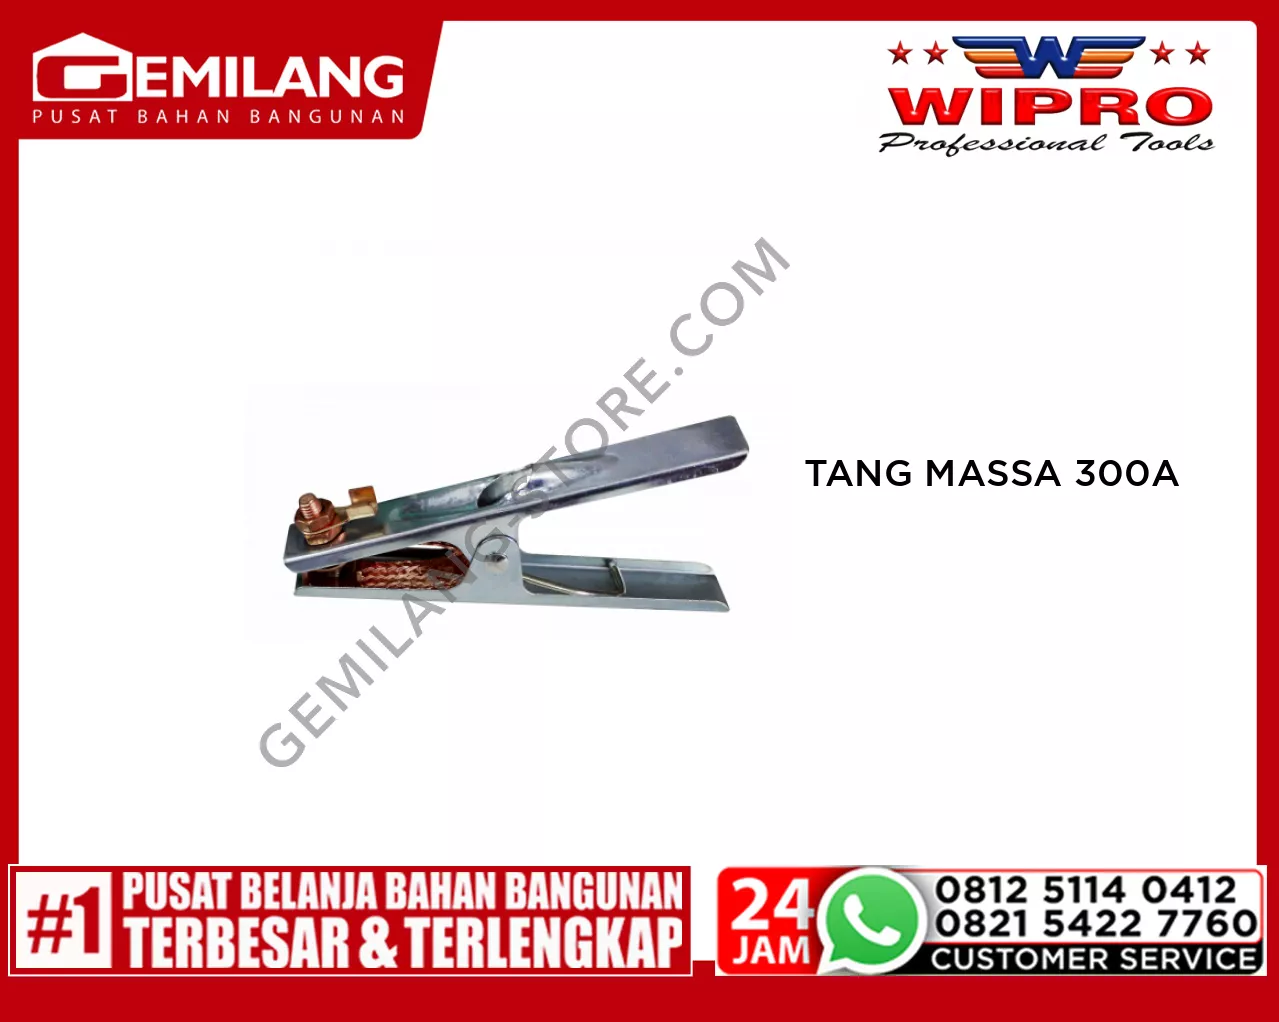 WIPRO TANG MASSA M/PLAT YJ98-7 300A